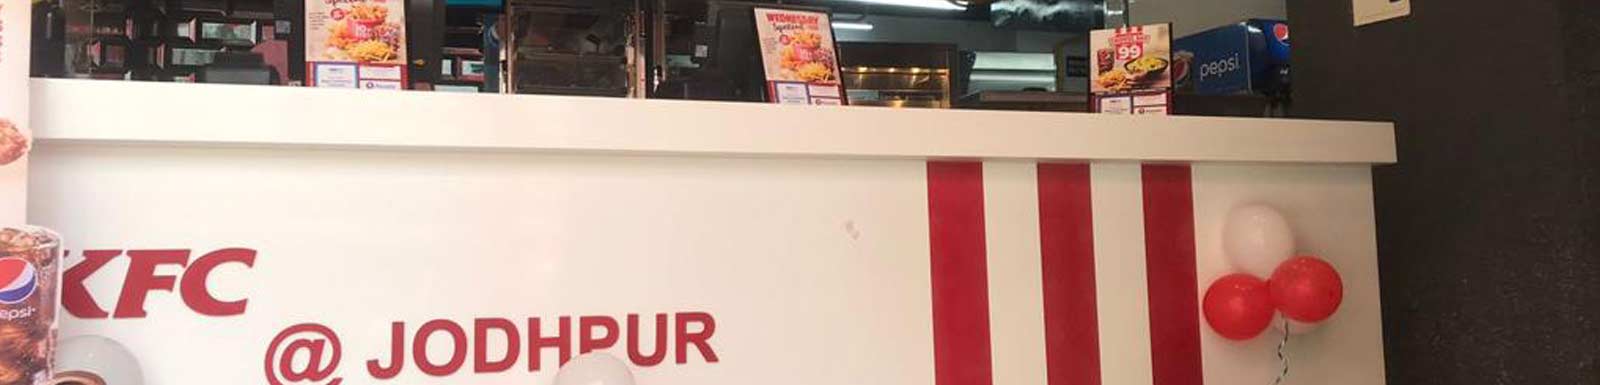 KFC, Jodhpur